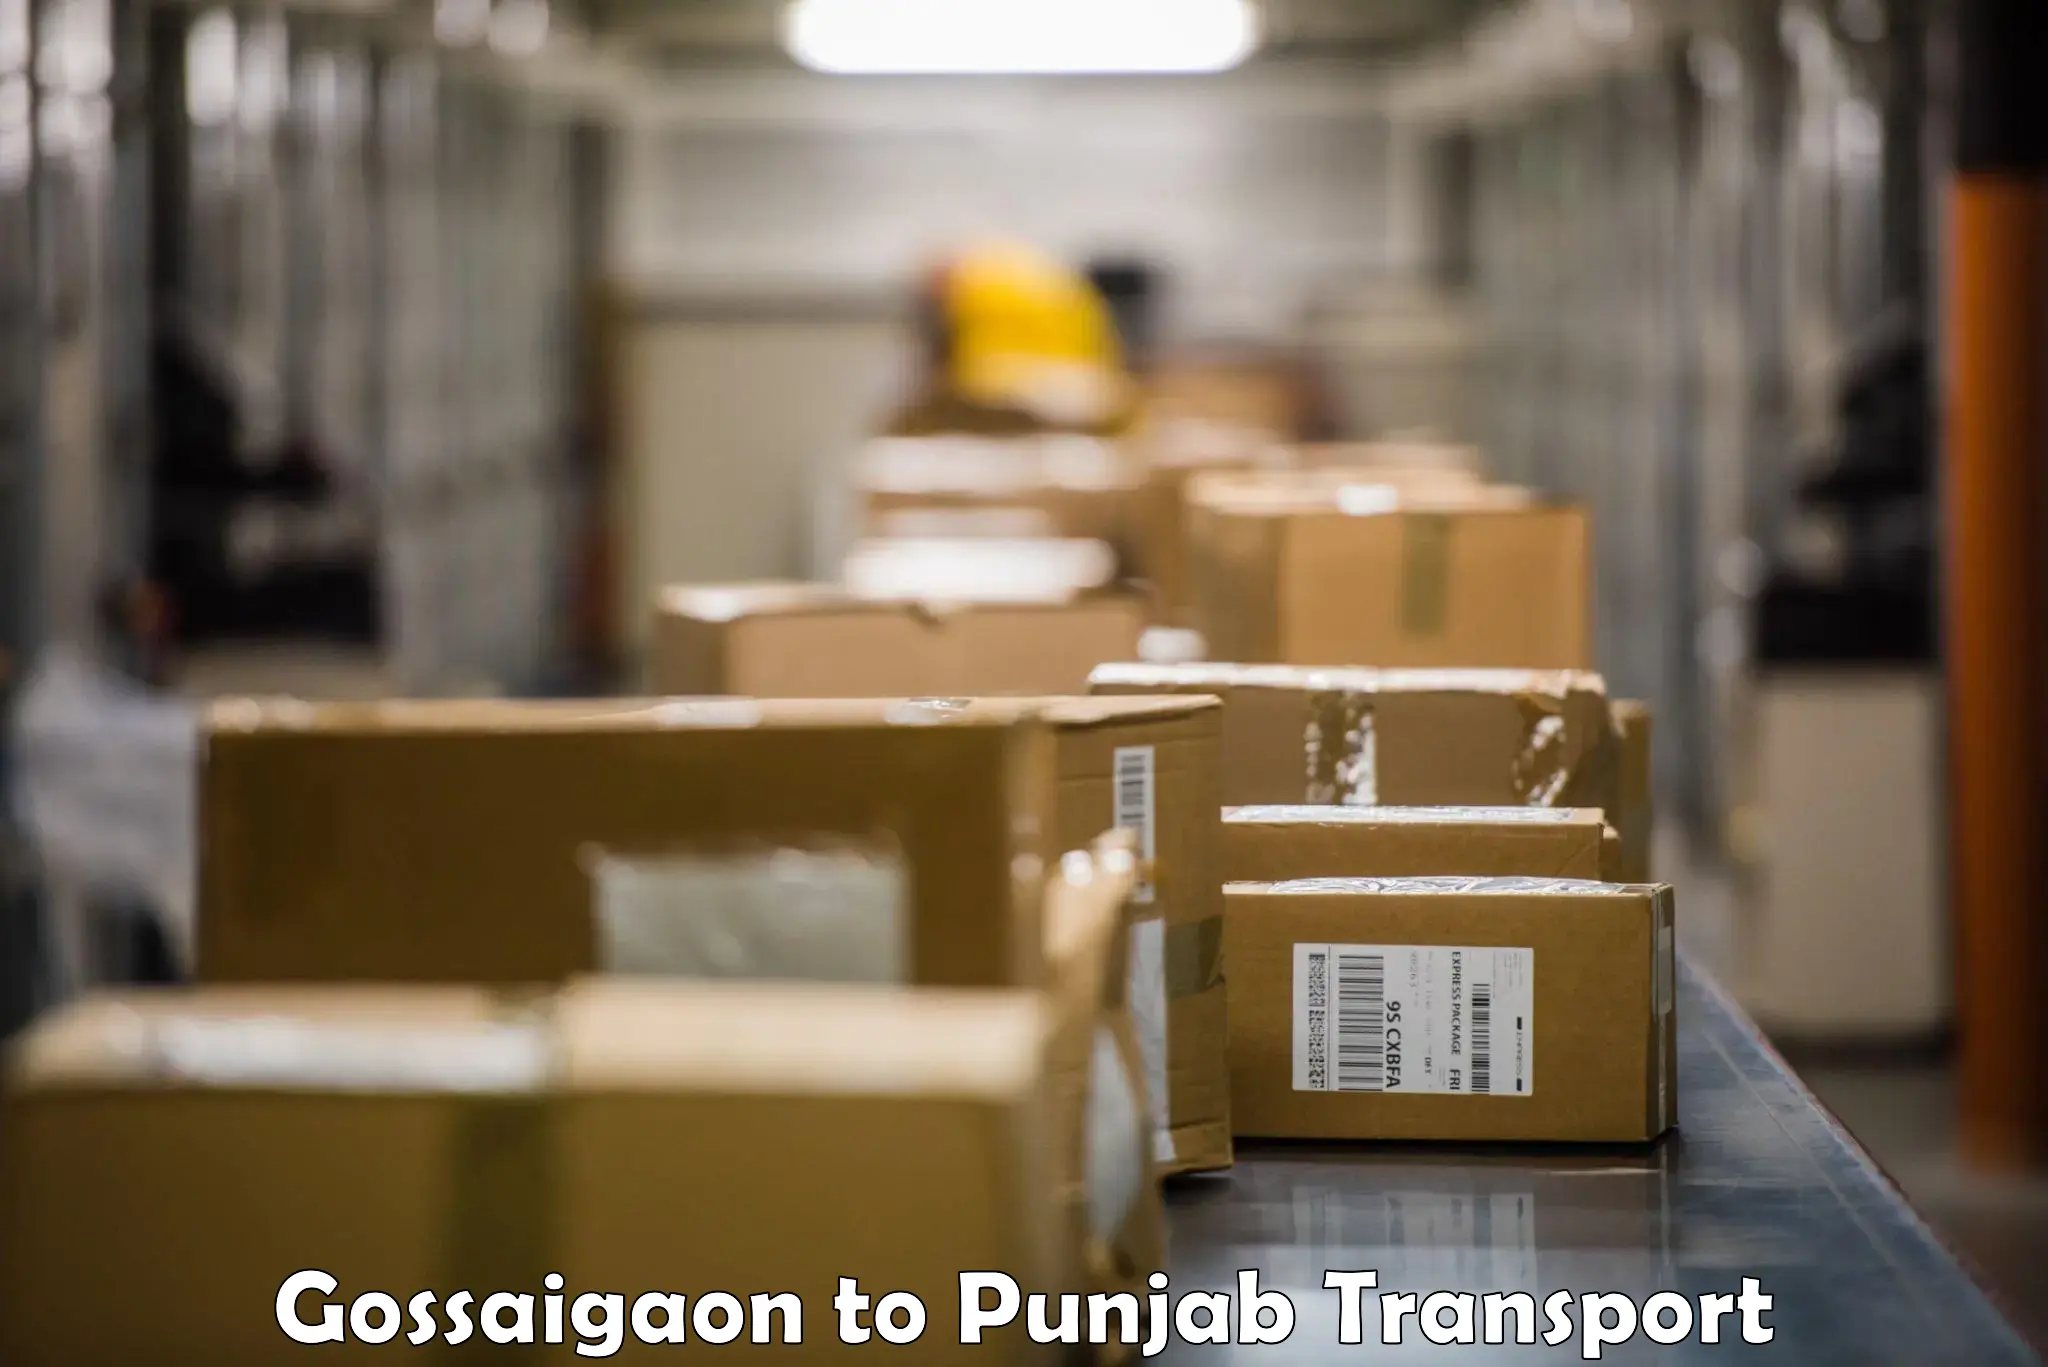 Transport in sharing Gossaigaon to Punjab